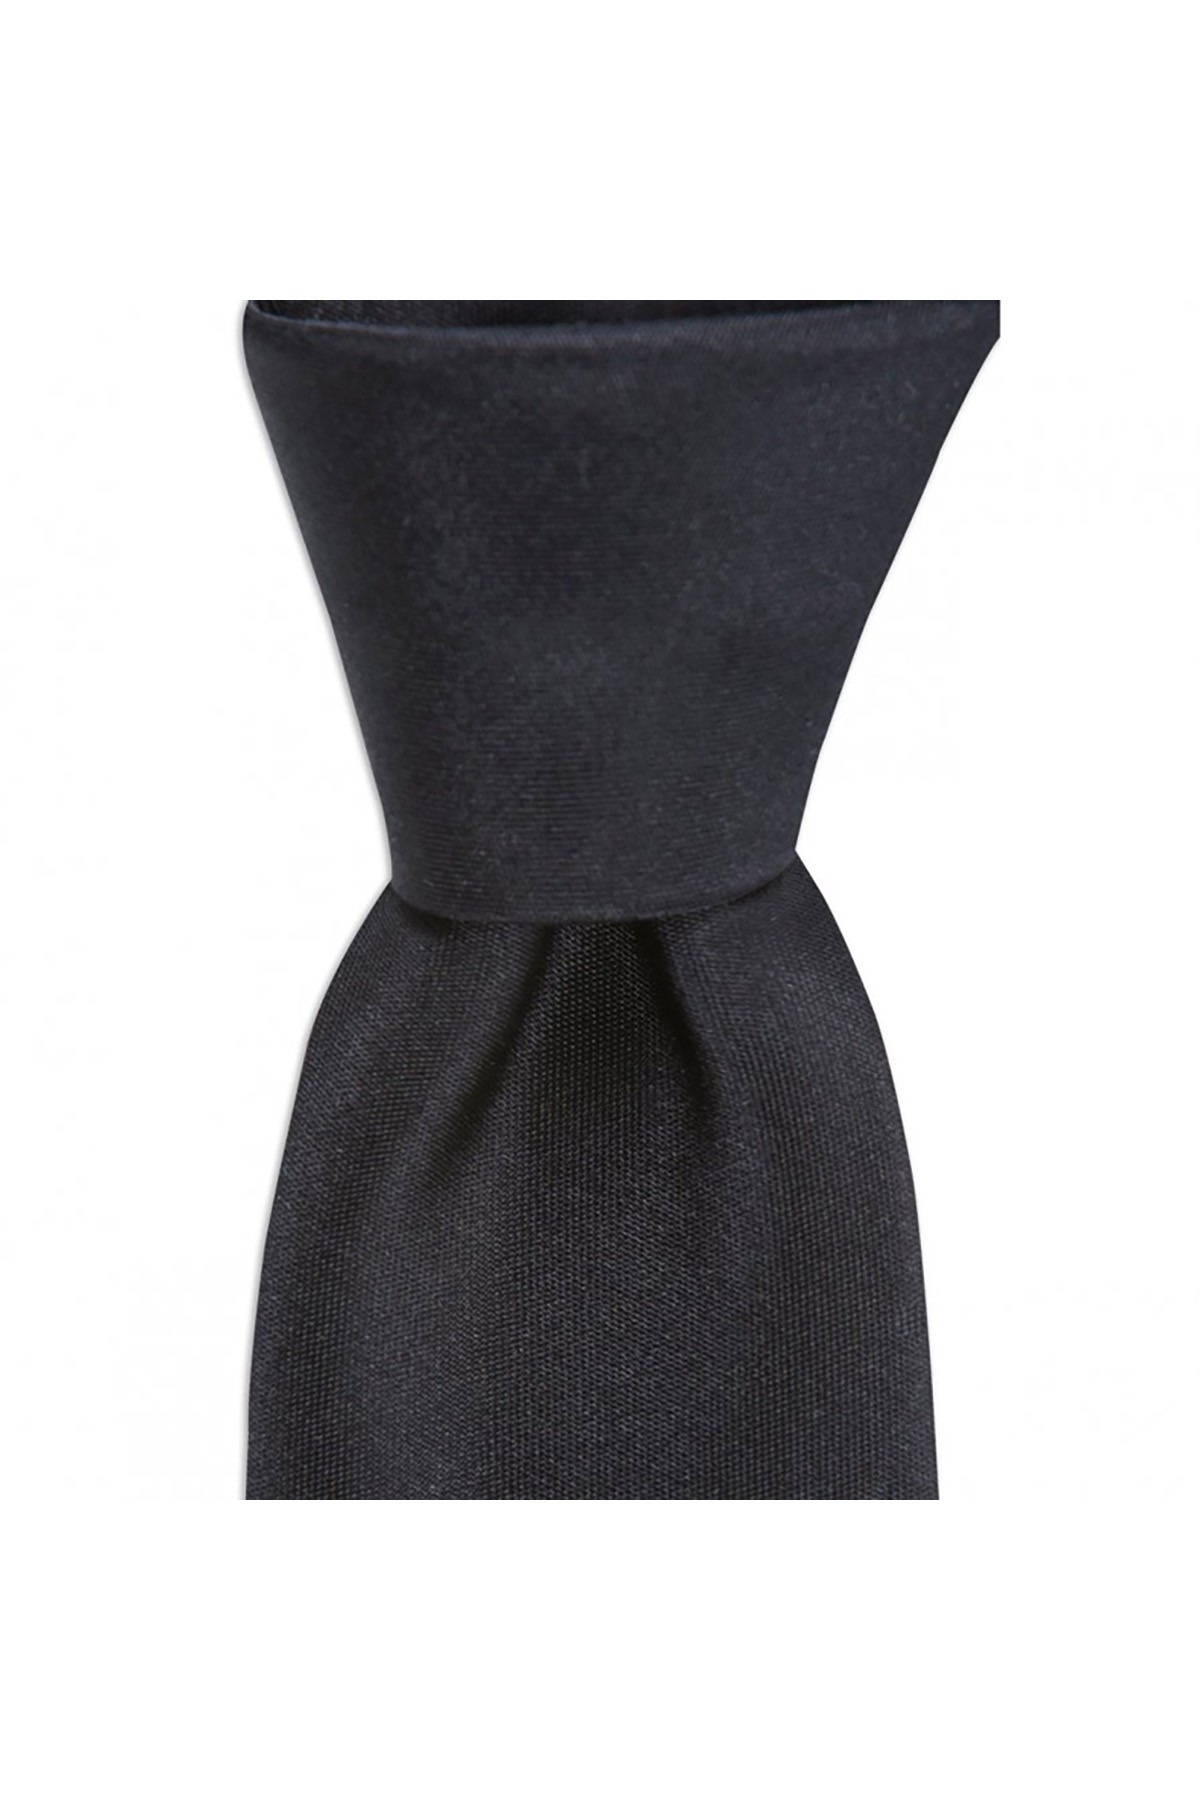 6 cm genişliğinde ince ipek kravat - Siyah